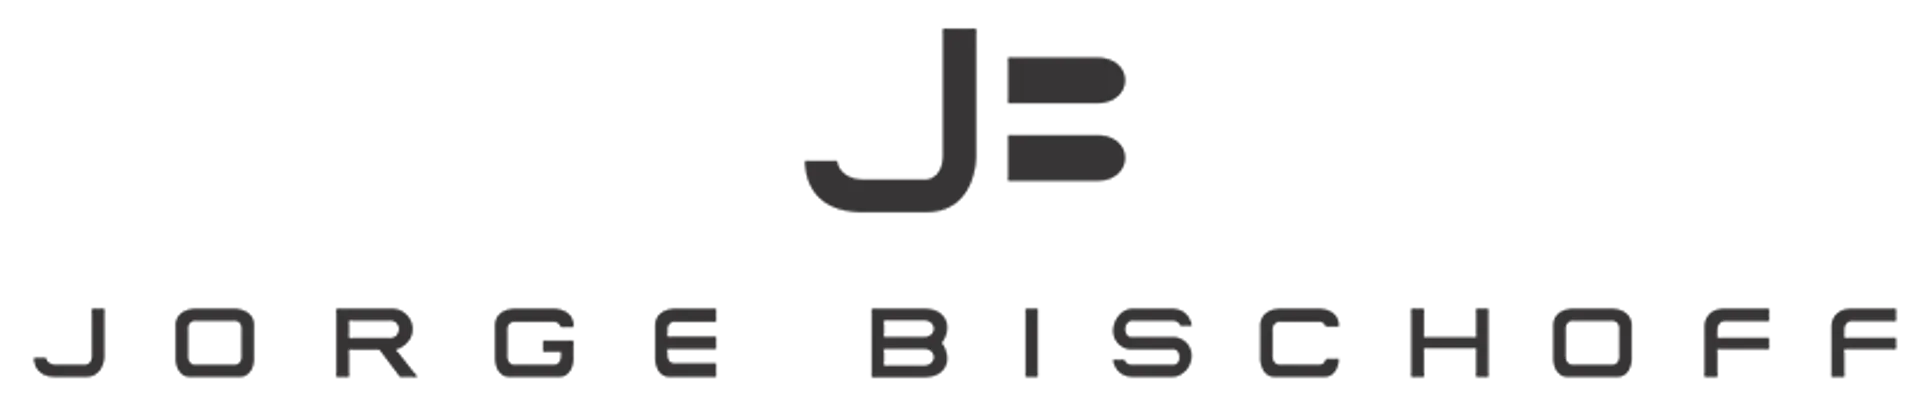 JORGE BISCHOFF logo